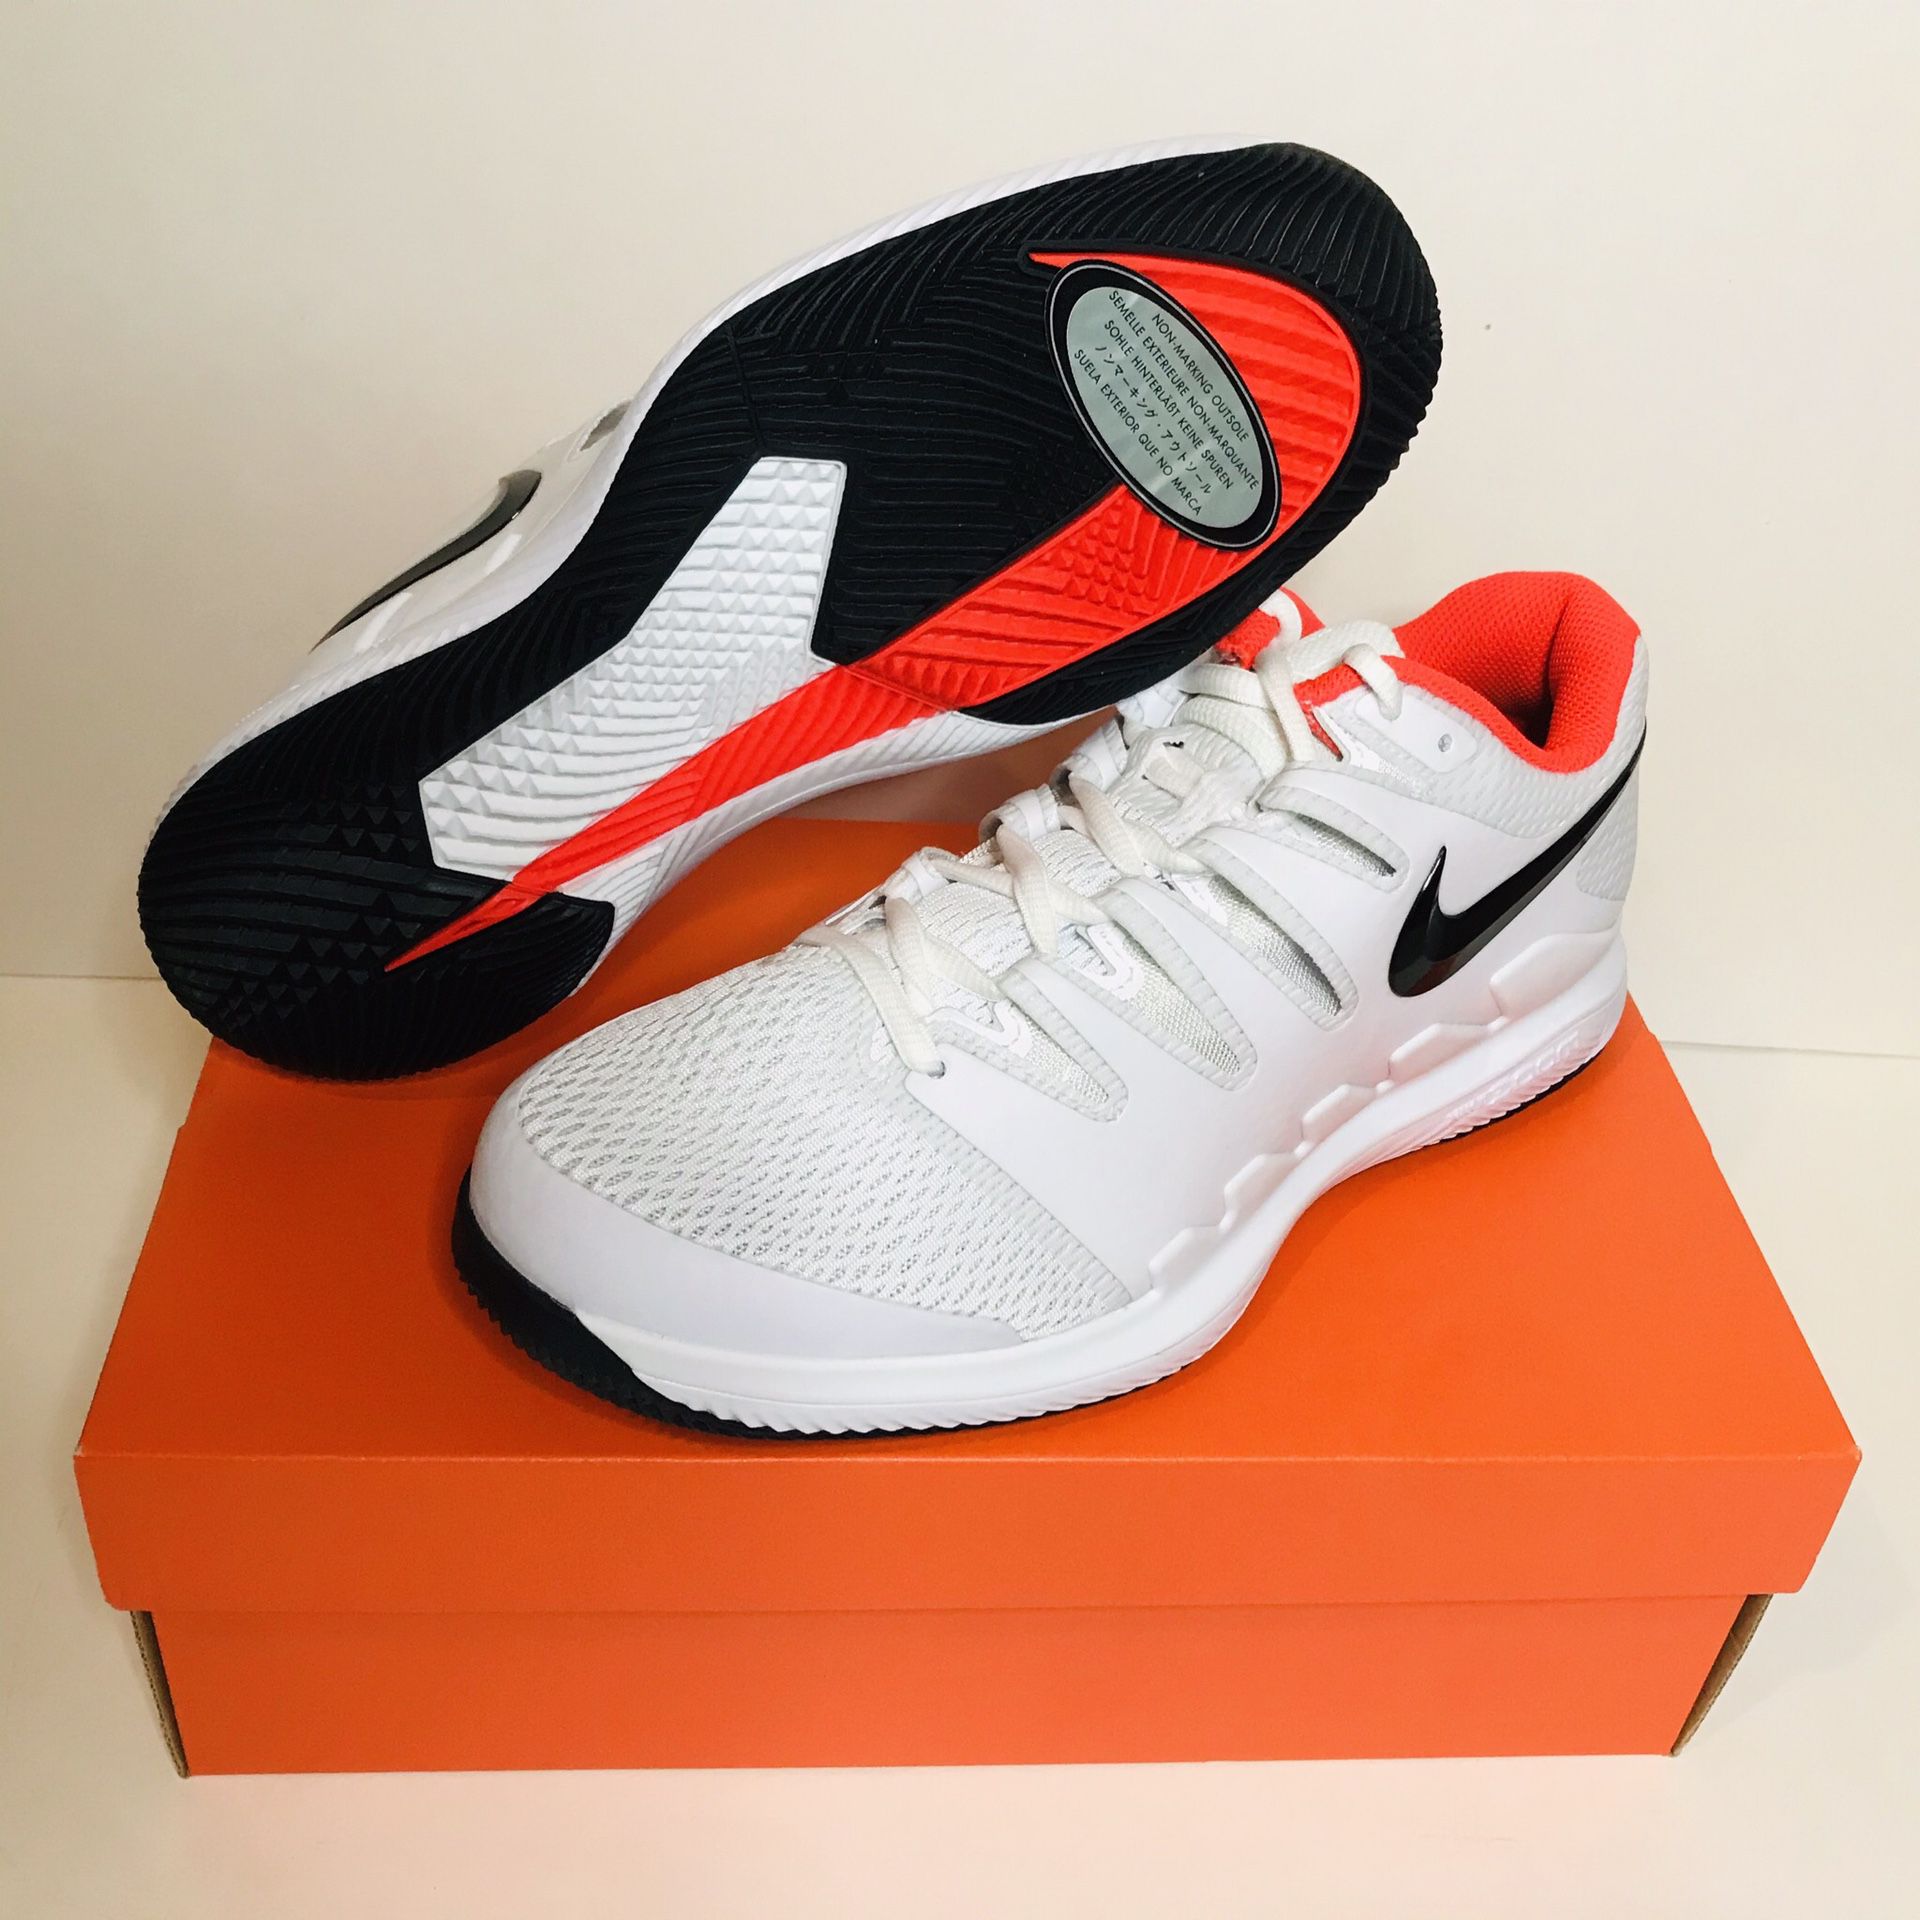 Nike Air Zoom Vapor X Wide Men’s Tennis Shoes Sz 8.5